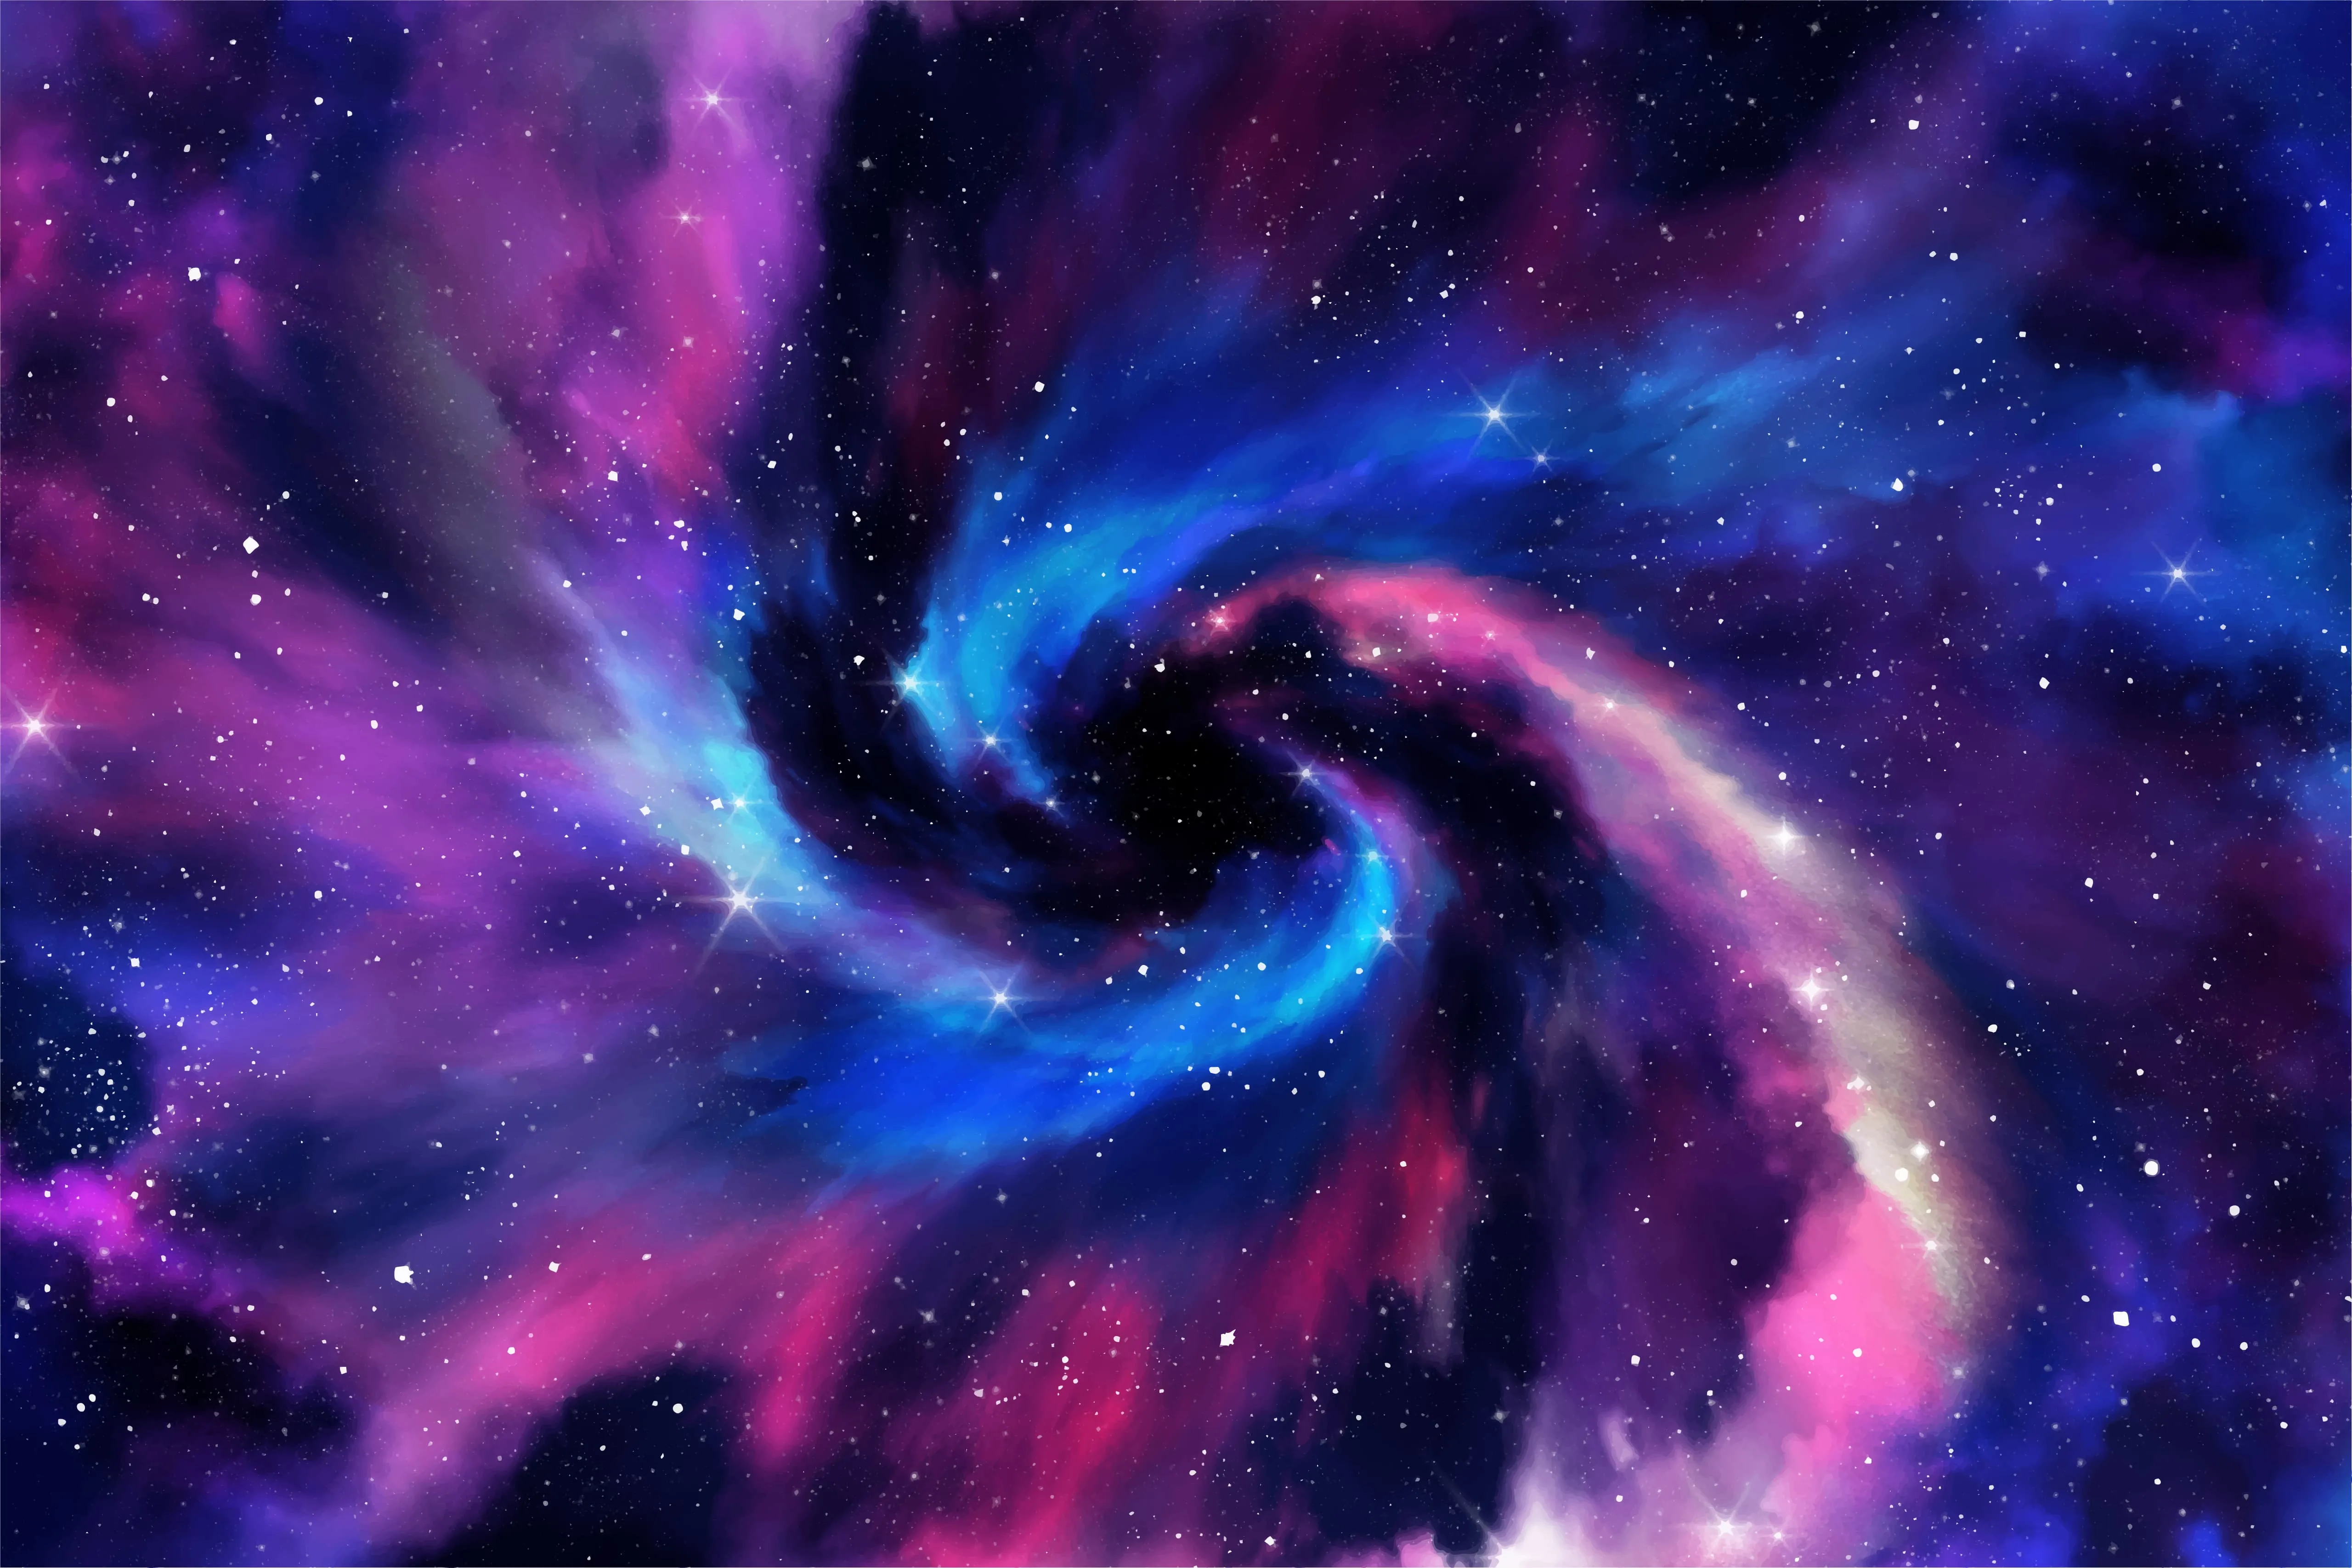 공간을 테마로 한 파란색과 보라색 배경의 ROG Nebula HDR 브랜드와 로고.